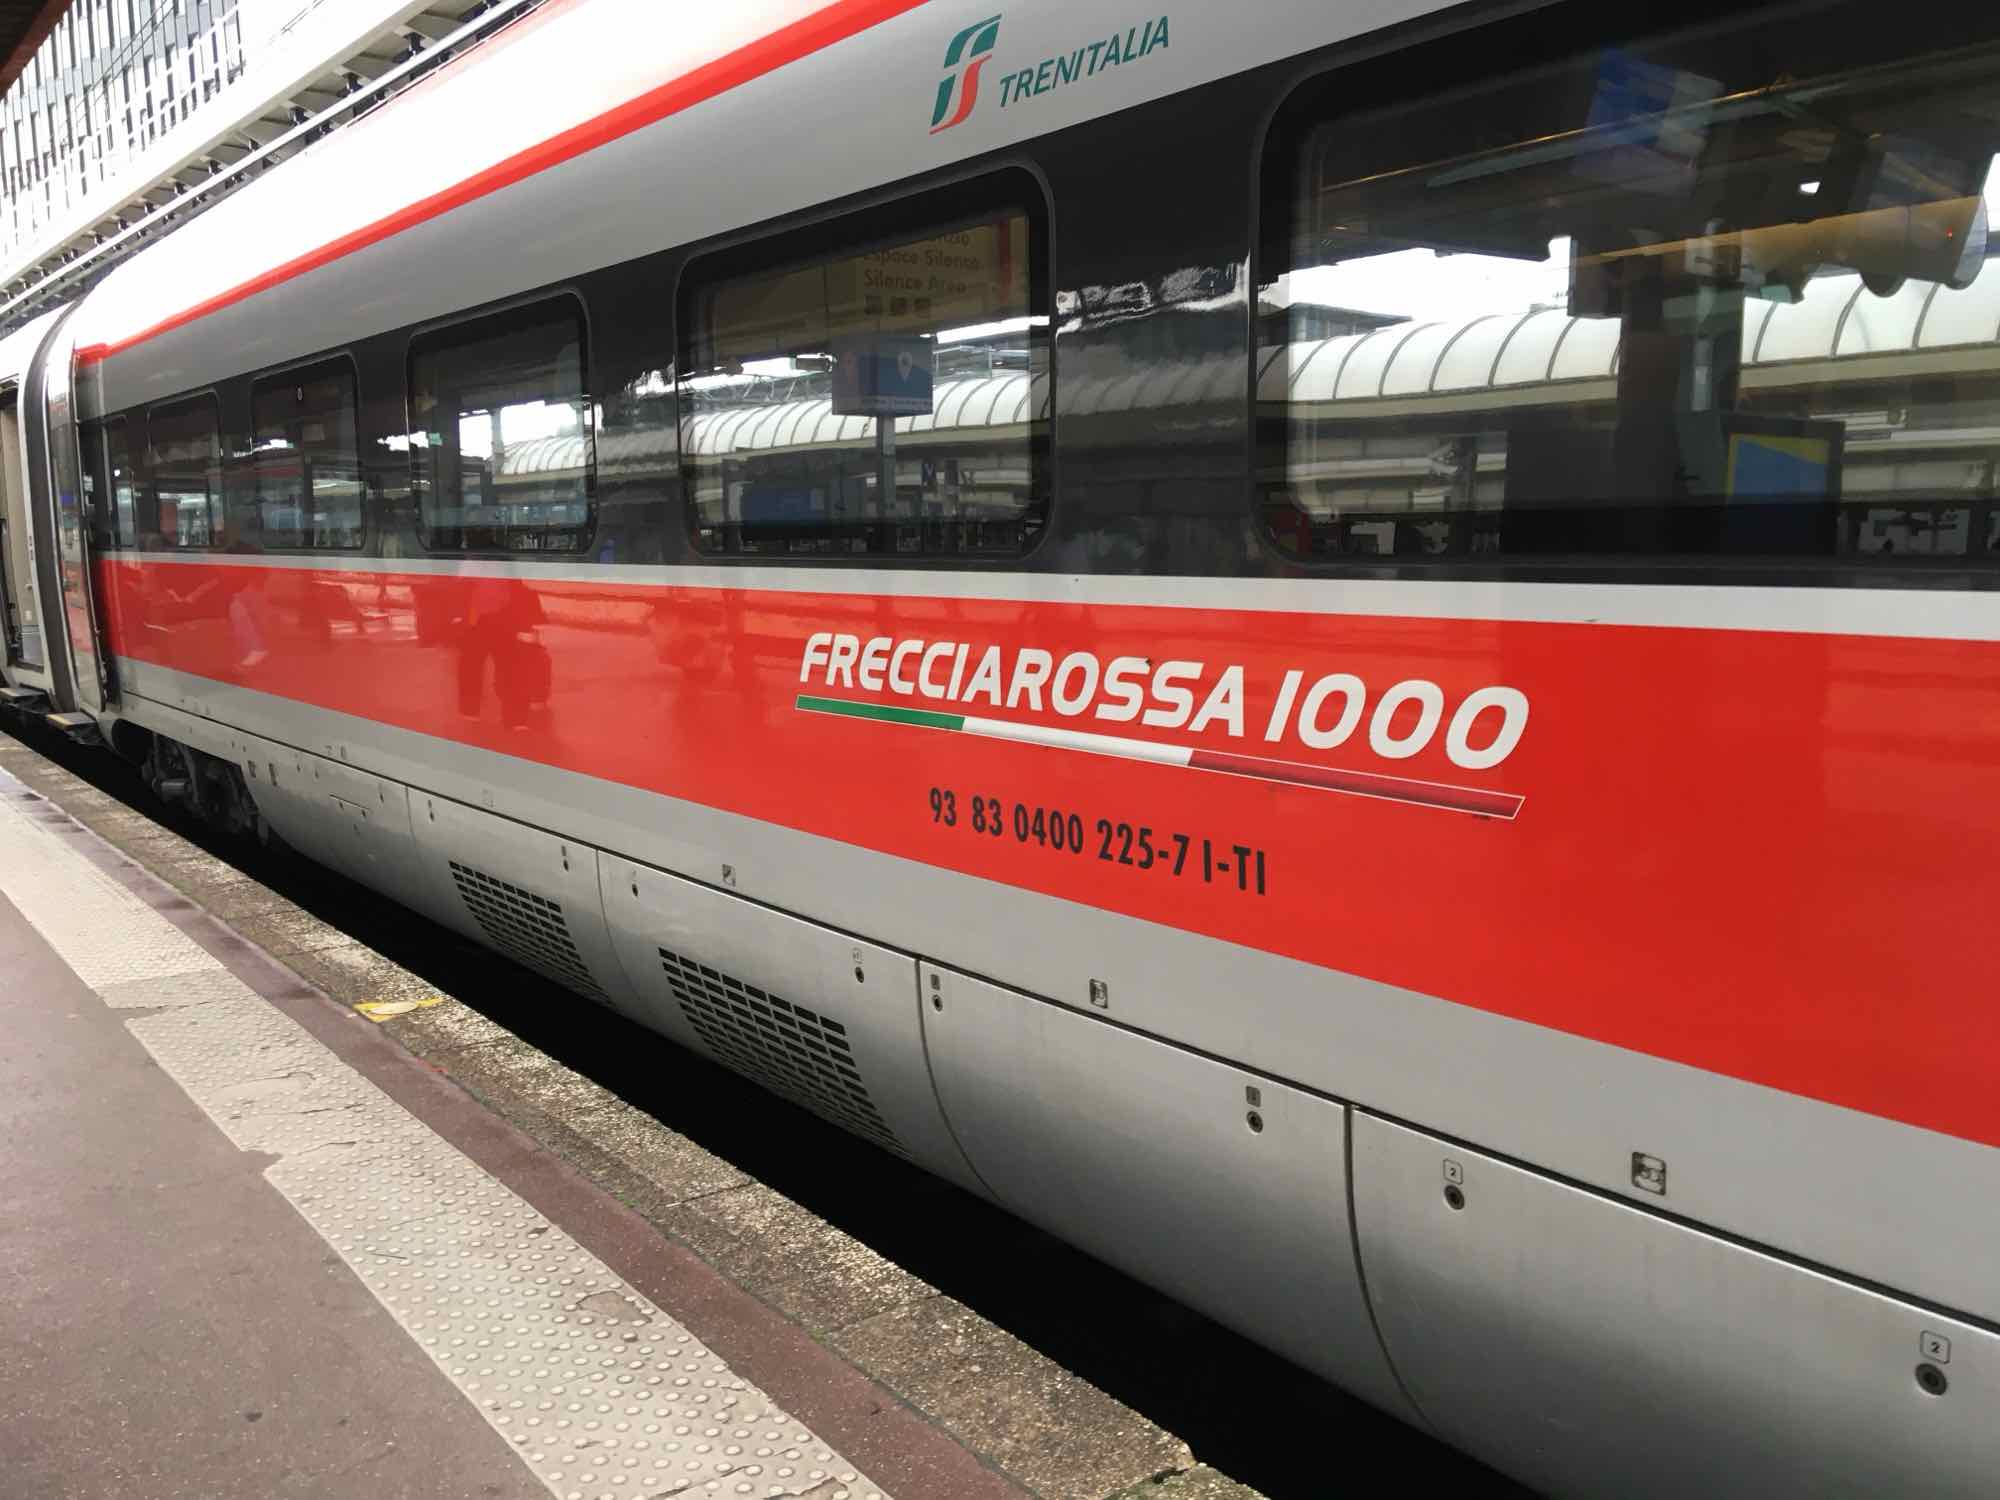 Photo of a Trenitalia Frecciarossa 1000 train at the platform